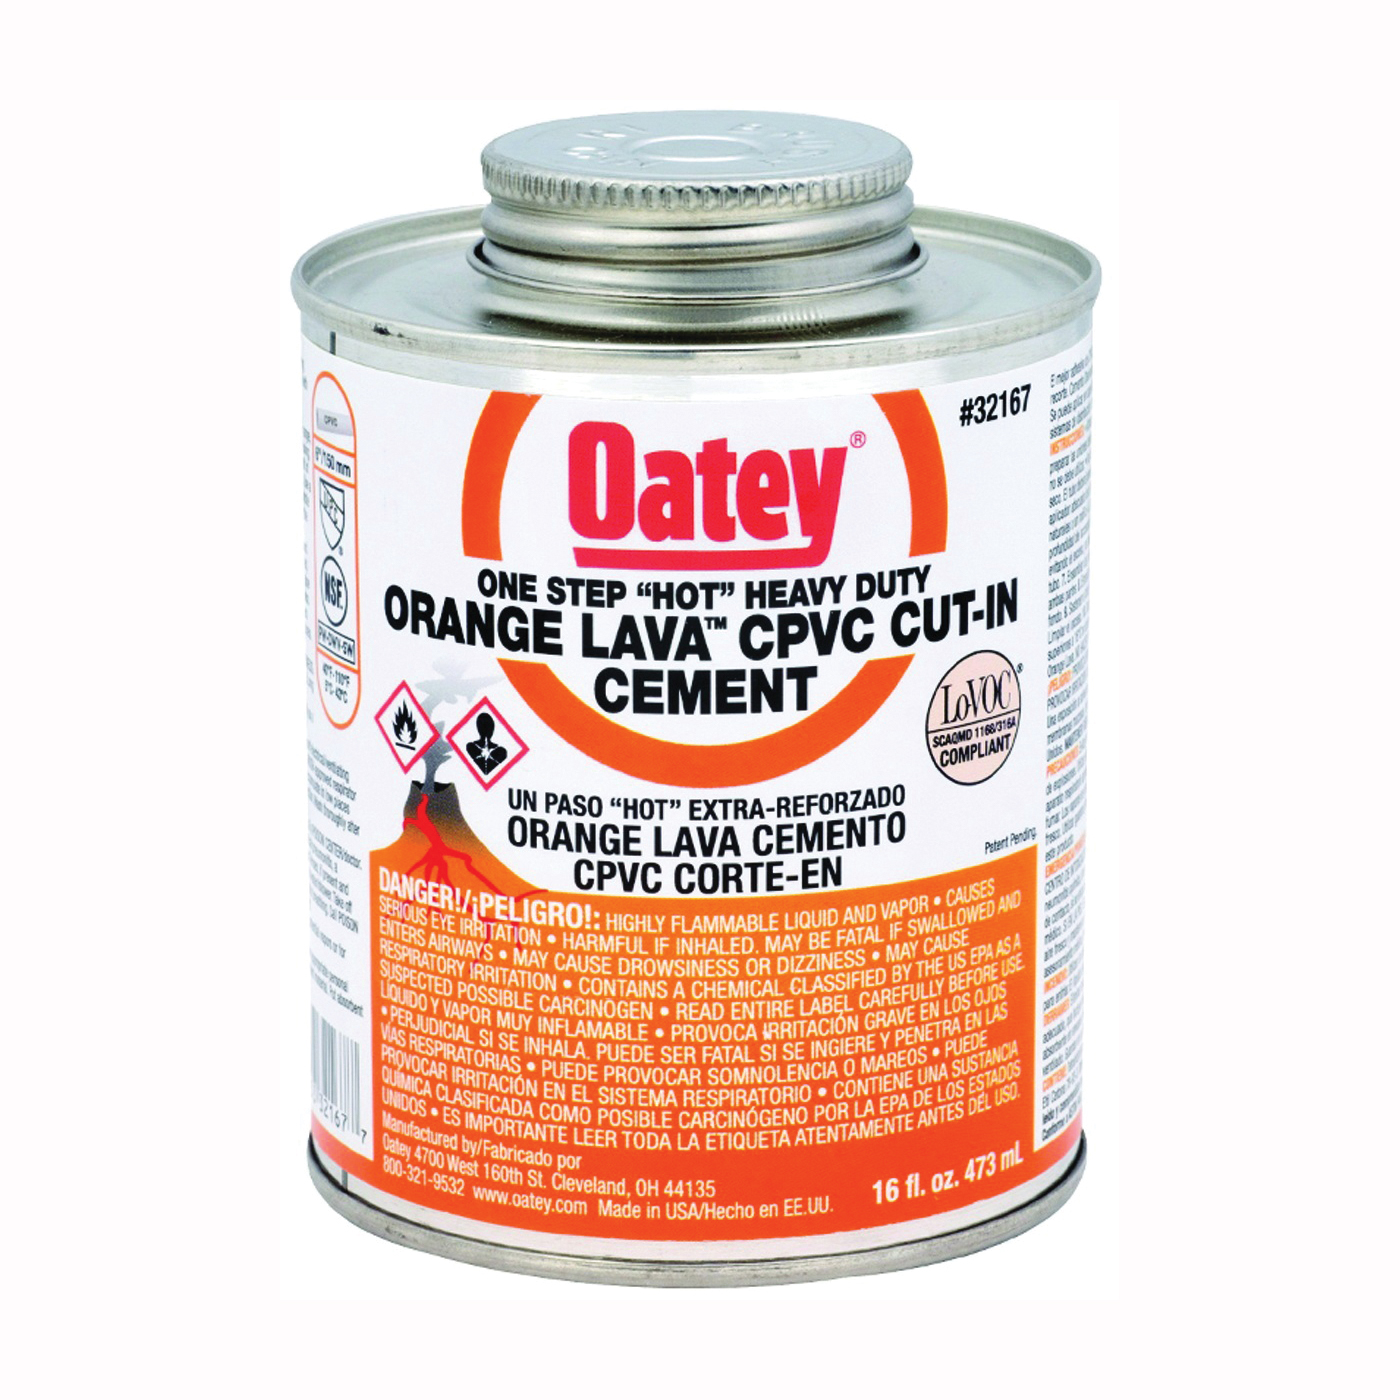 32167 Solvent Cement, 16 oz Can, Liquid, Orange